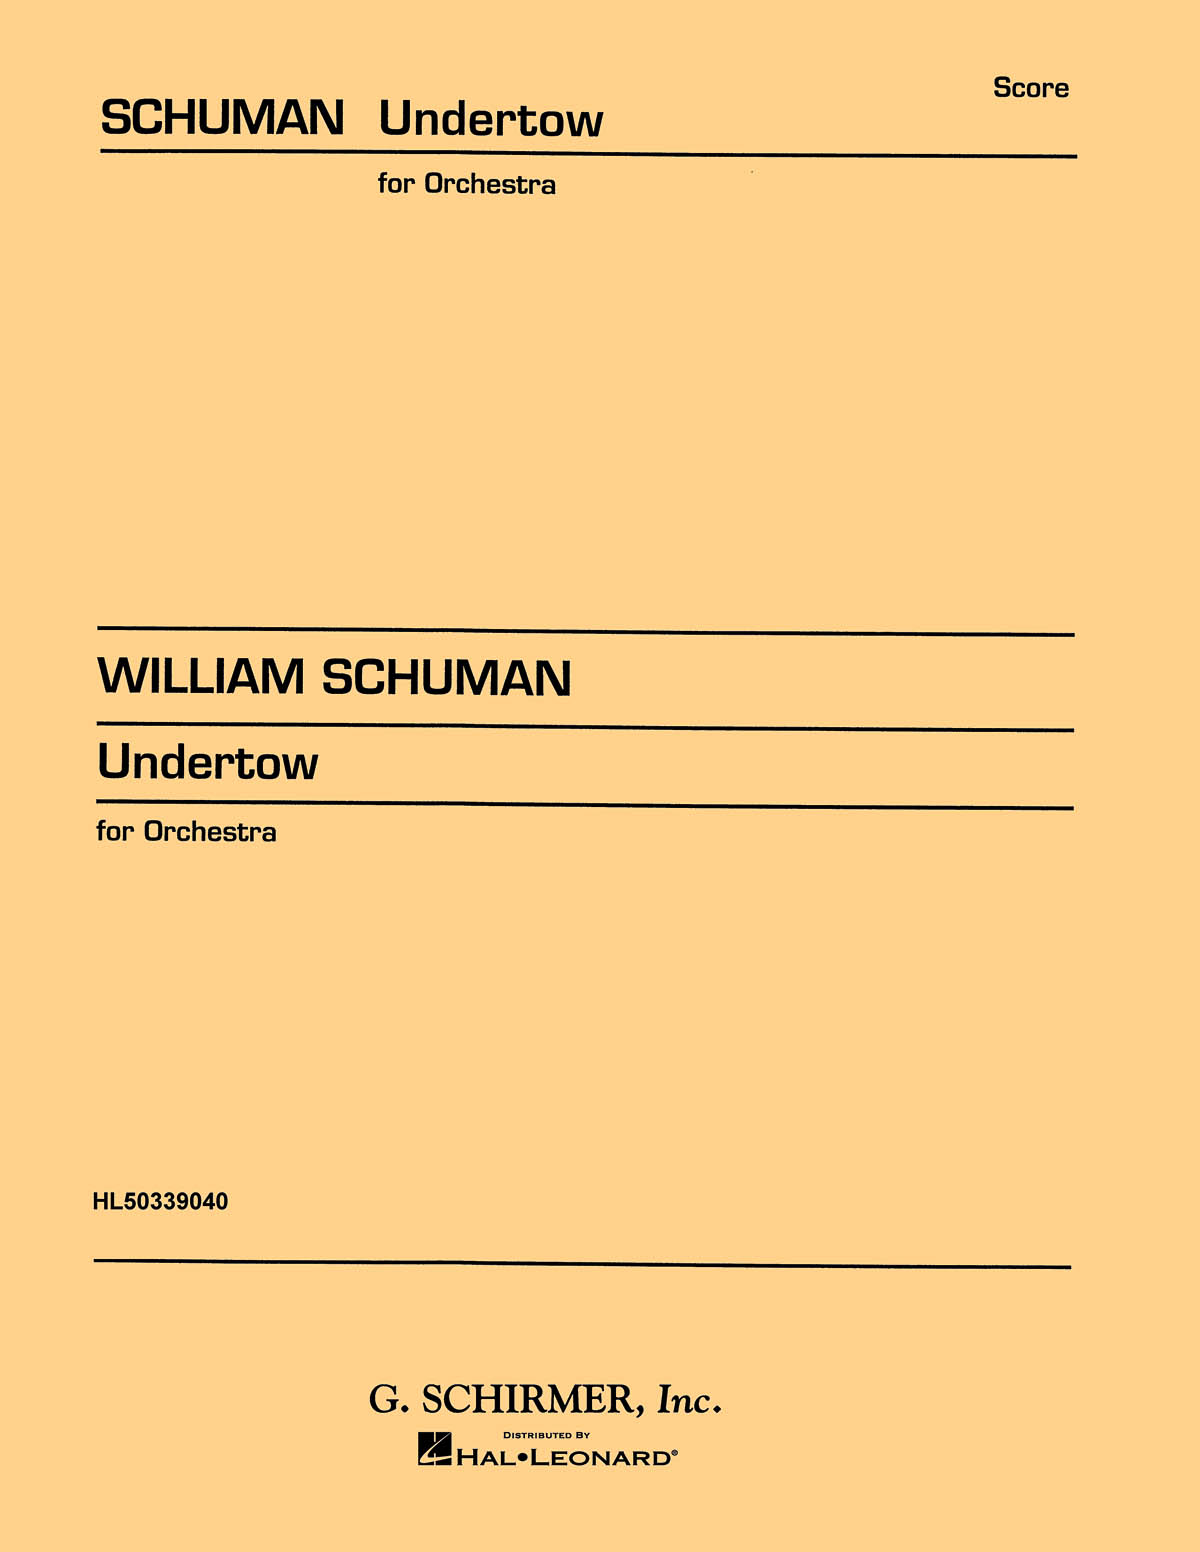 Schuman, W Undertow Choreographic Episodes Orch Stsc